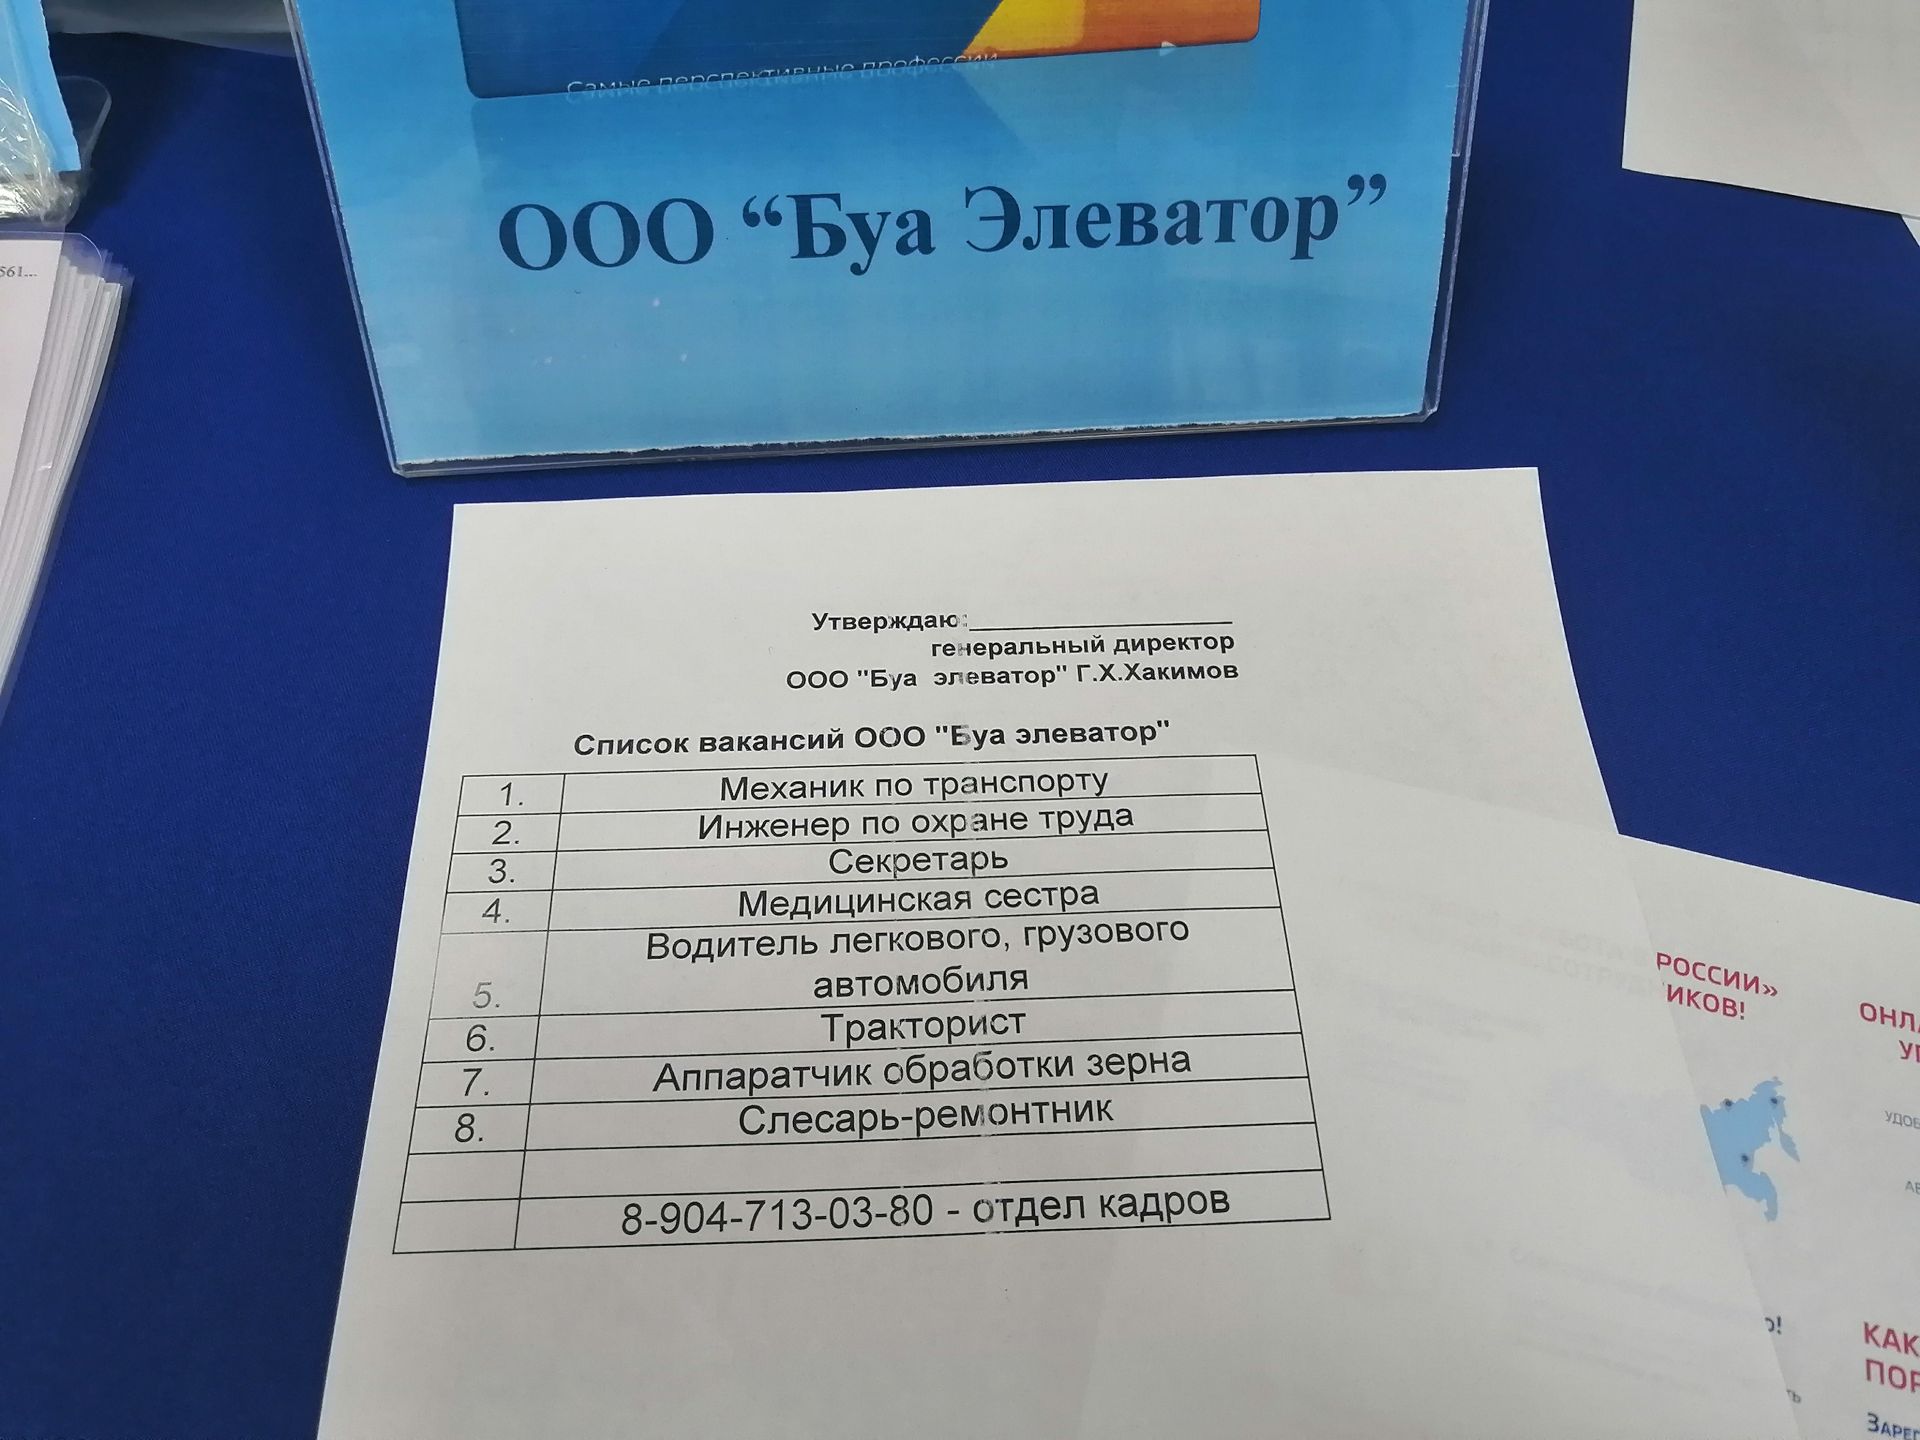 Сегодня в Буинске предлагали вакансии с заработной платой 60 тысяч рублей (фото, видео)